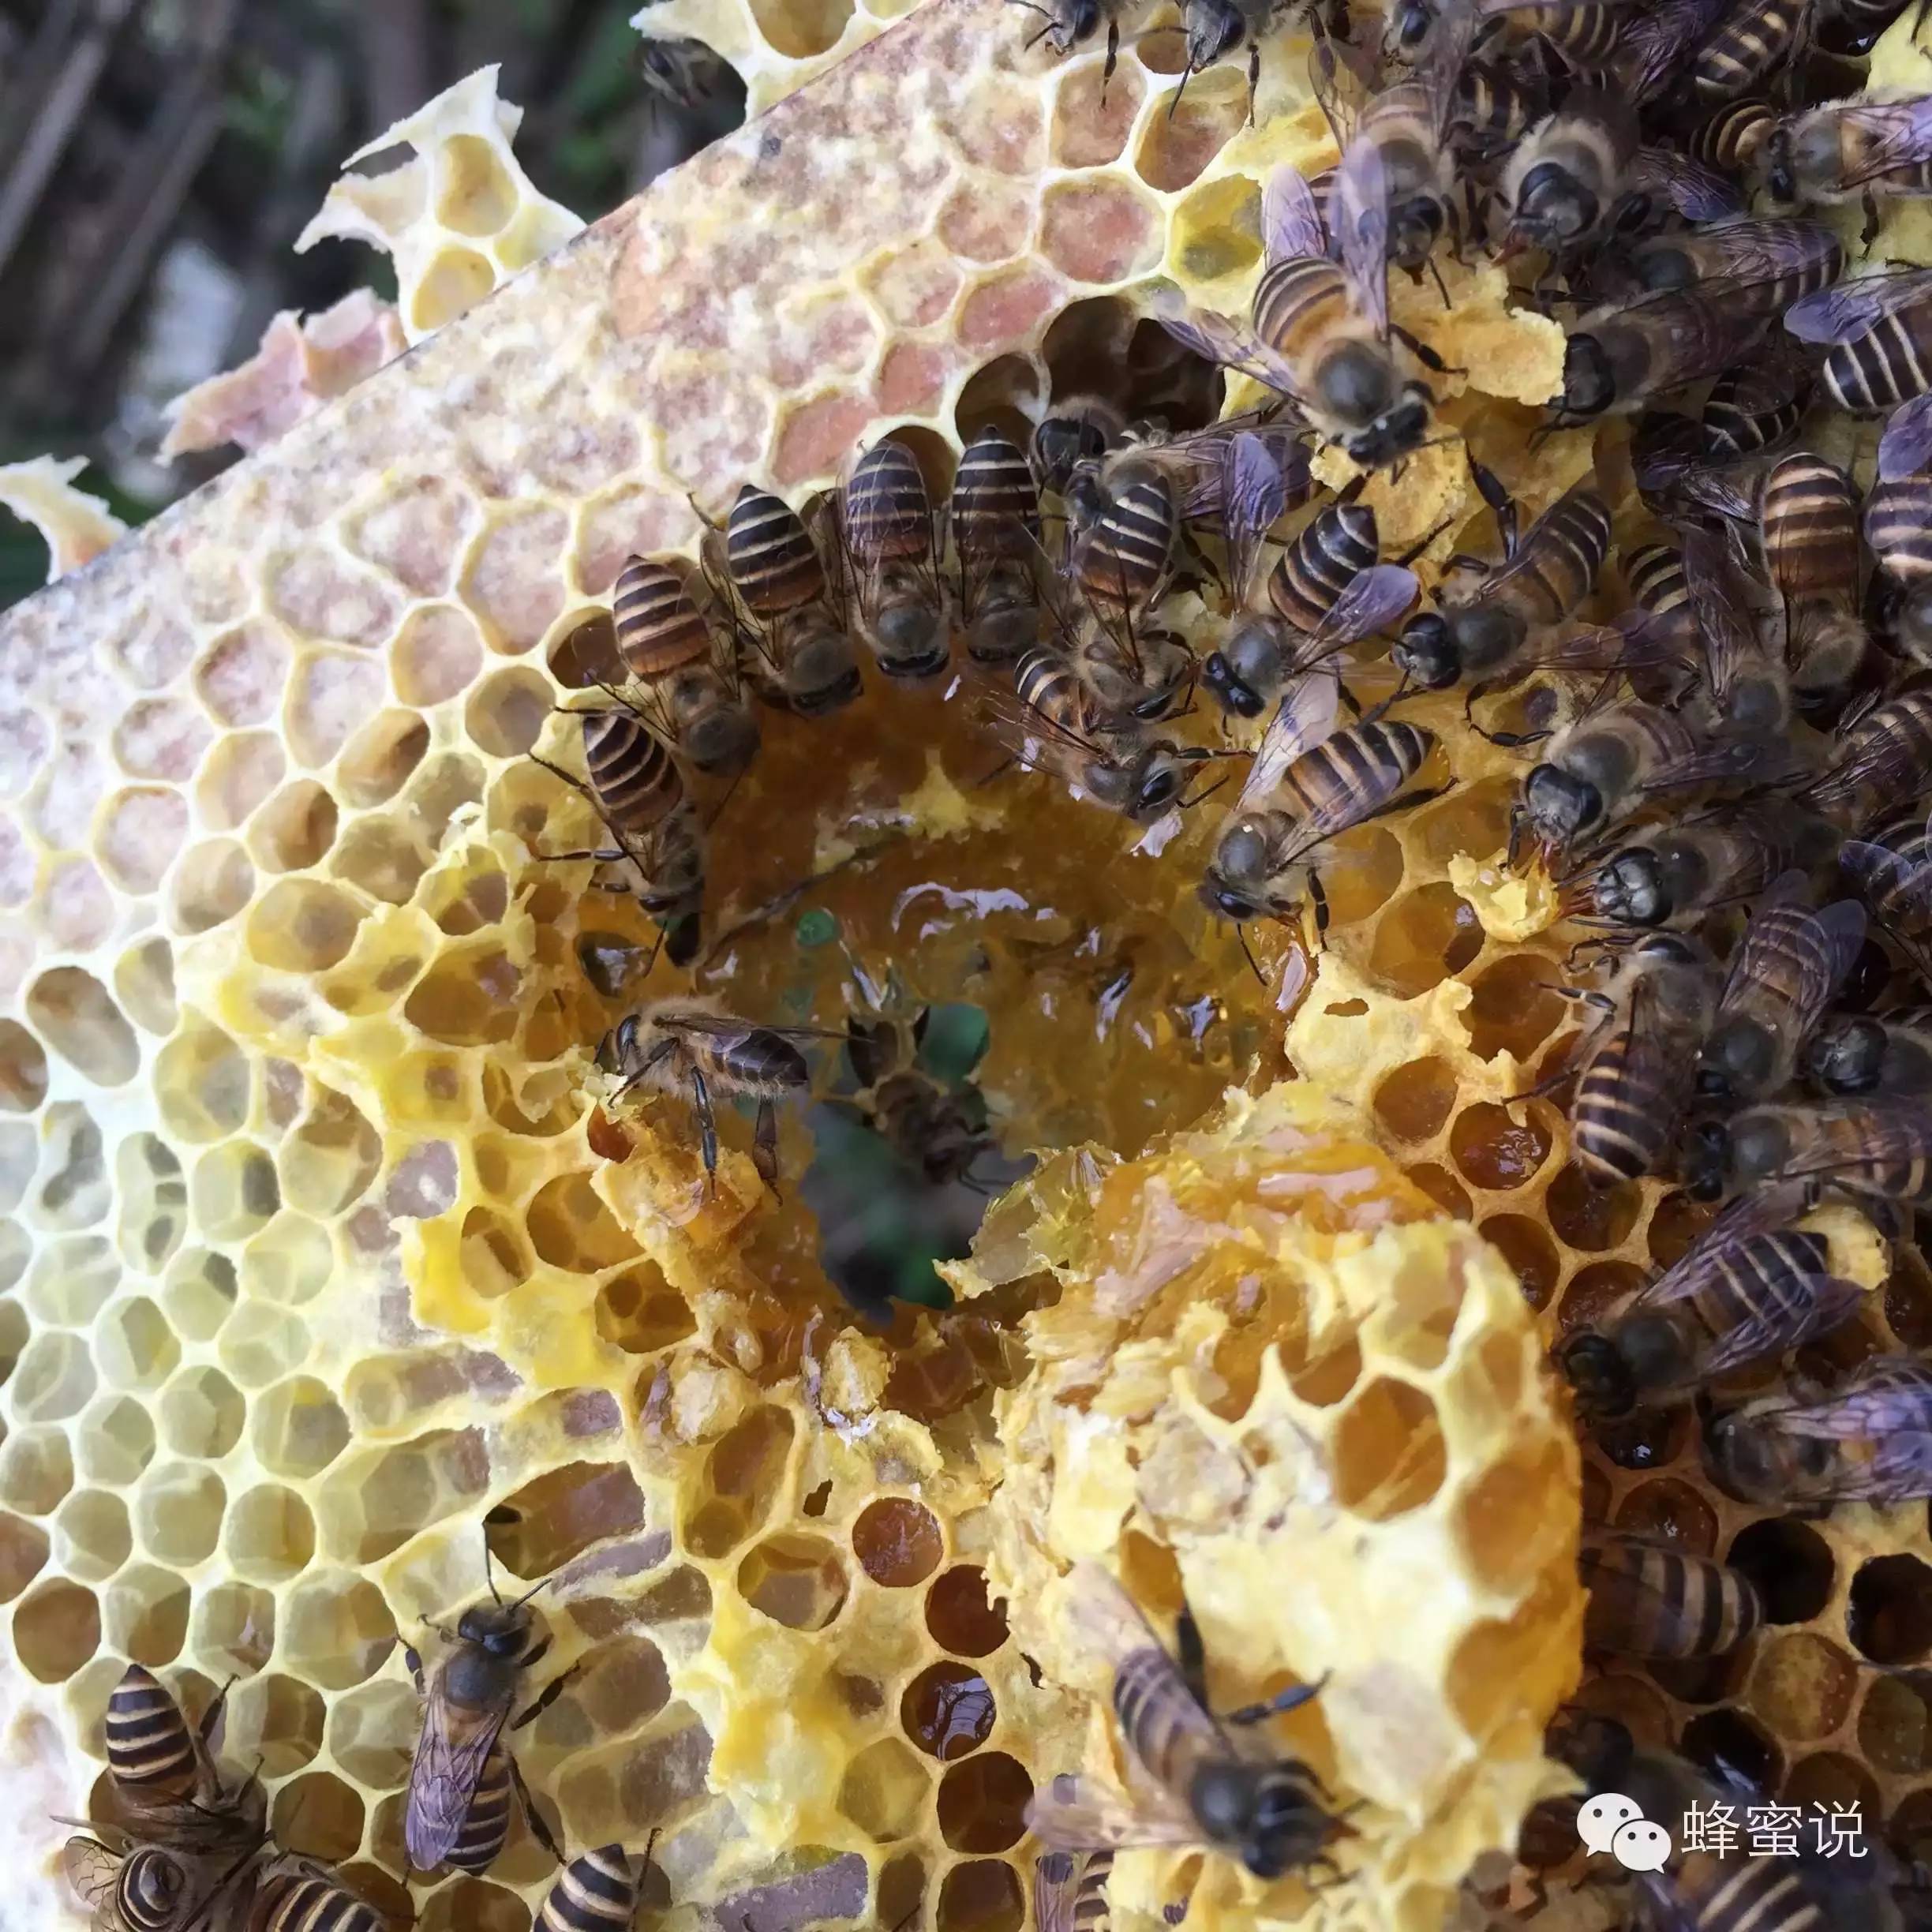 全球蜂蜜产量及主要蜜源产区盘点——北美洲蜜源